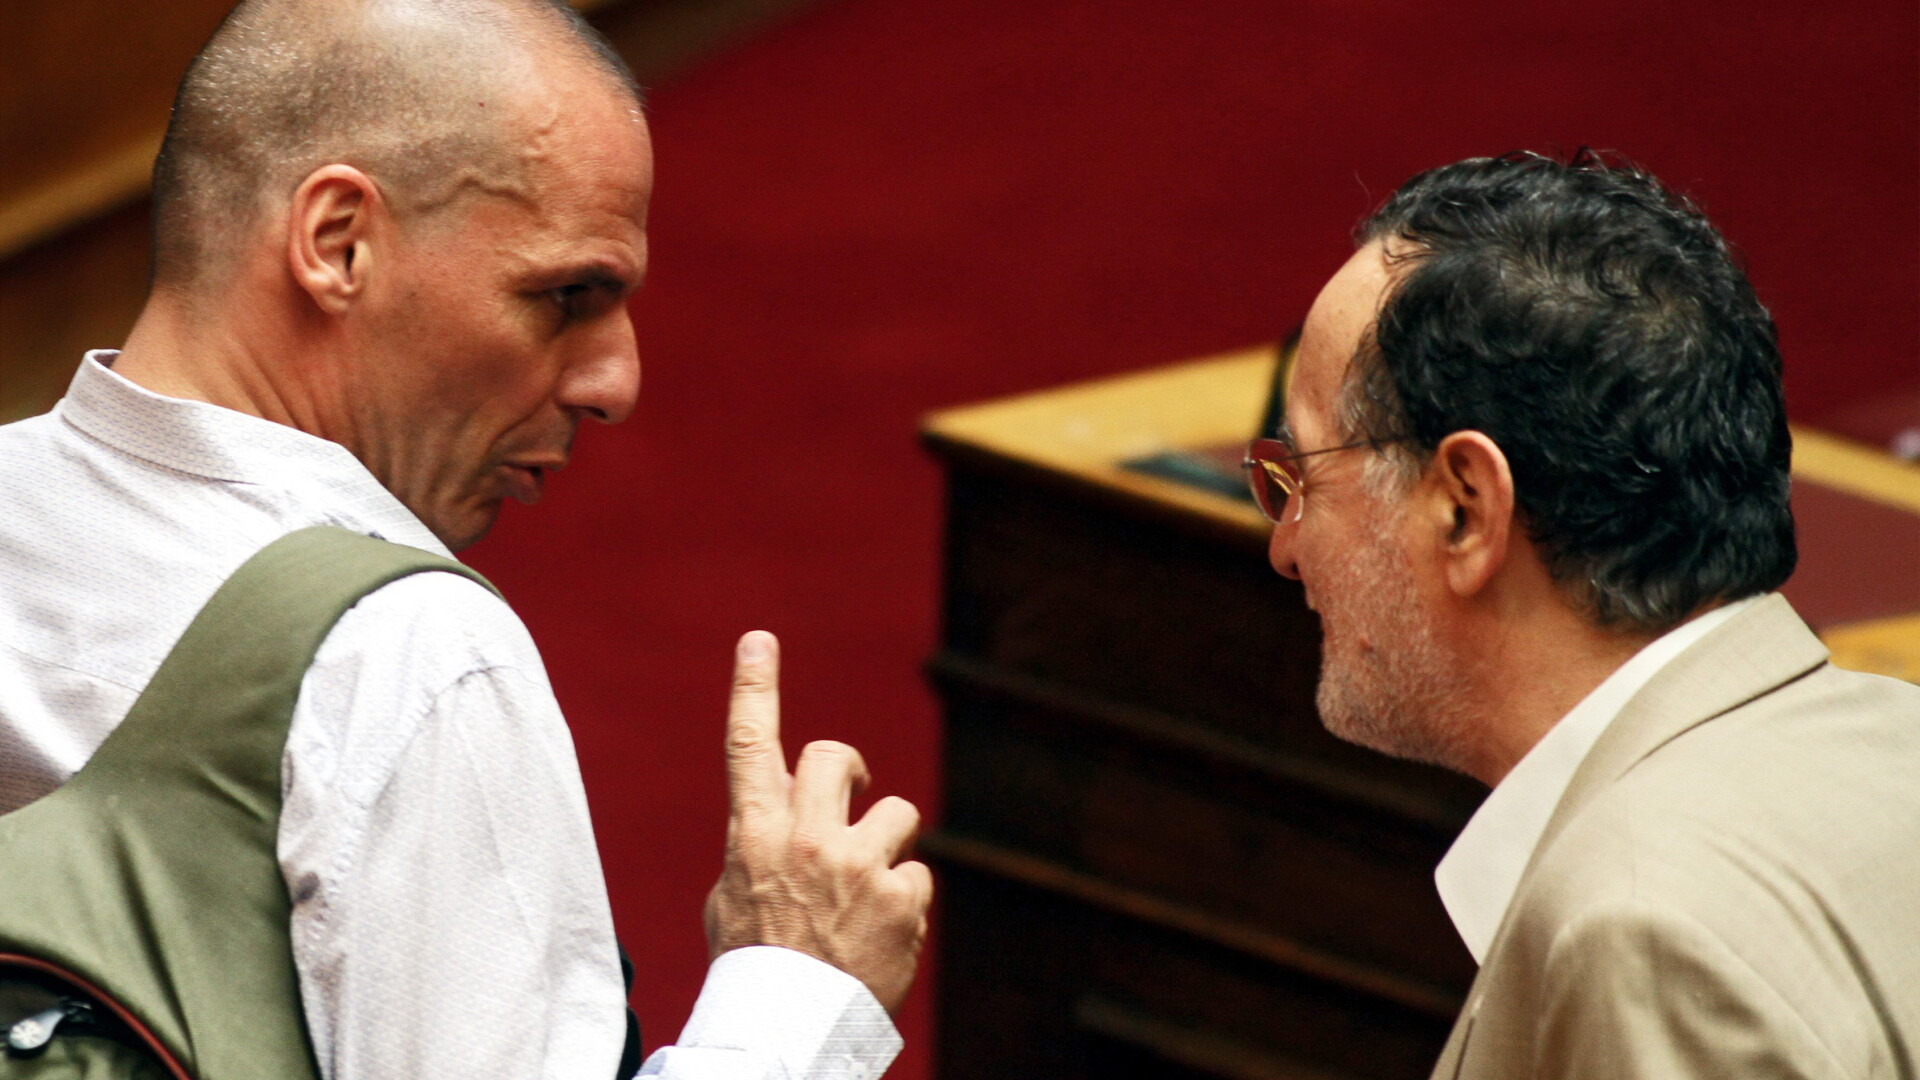 Yanis Varoufakis, Panagiotis Lafazanis - AGERPRES